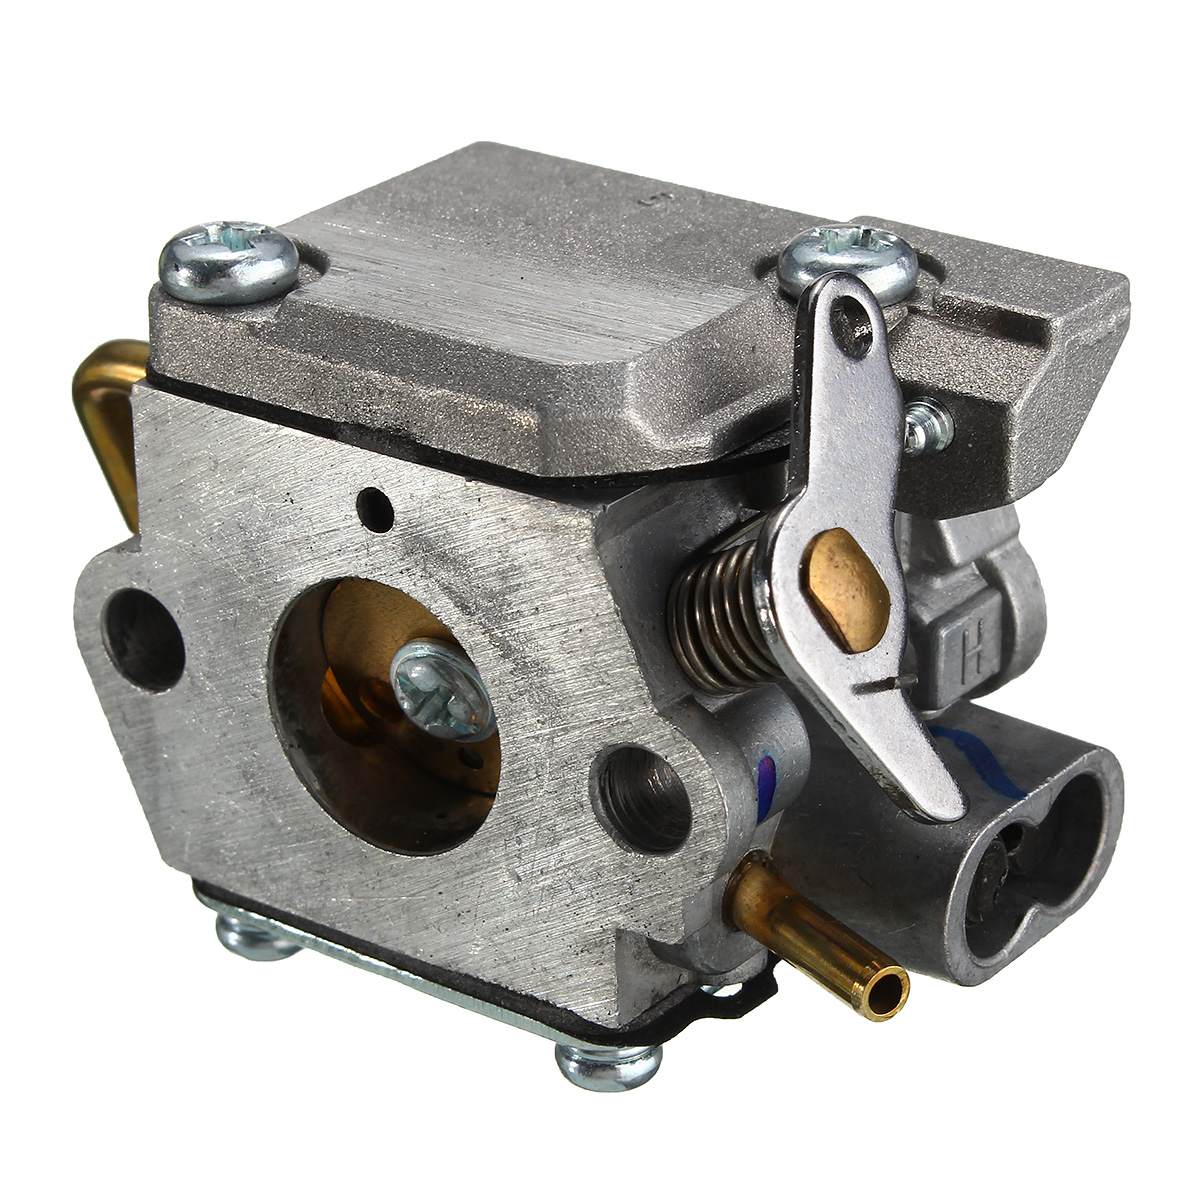 Carburetor Assembly Gaskets Primer Bulb Fuel Filter For Walbro WT-682-1 WT-682 MTD 753-04408